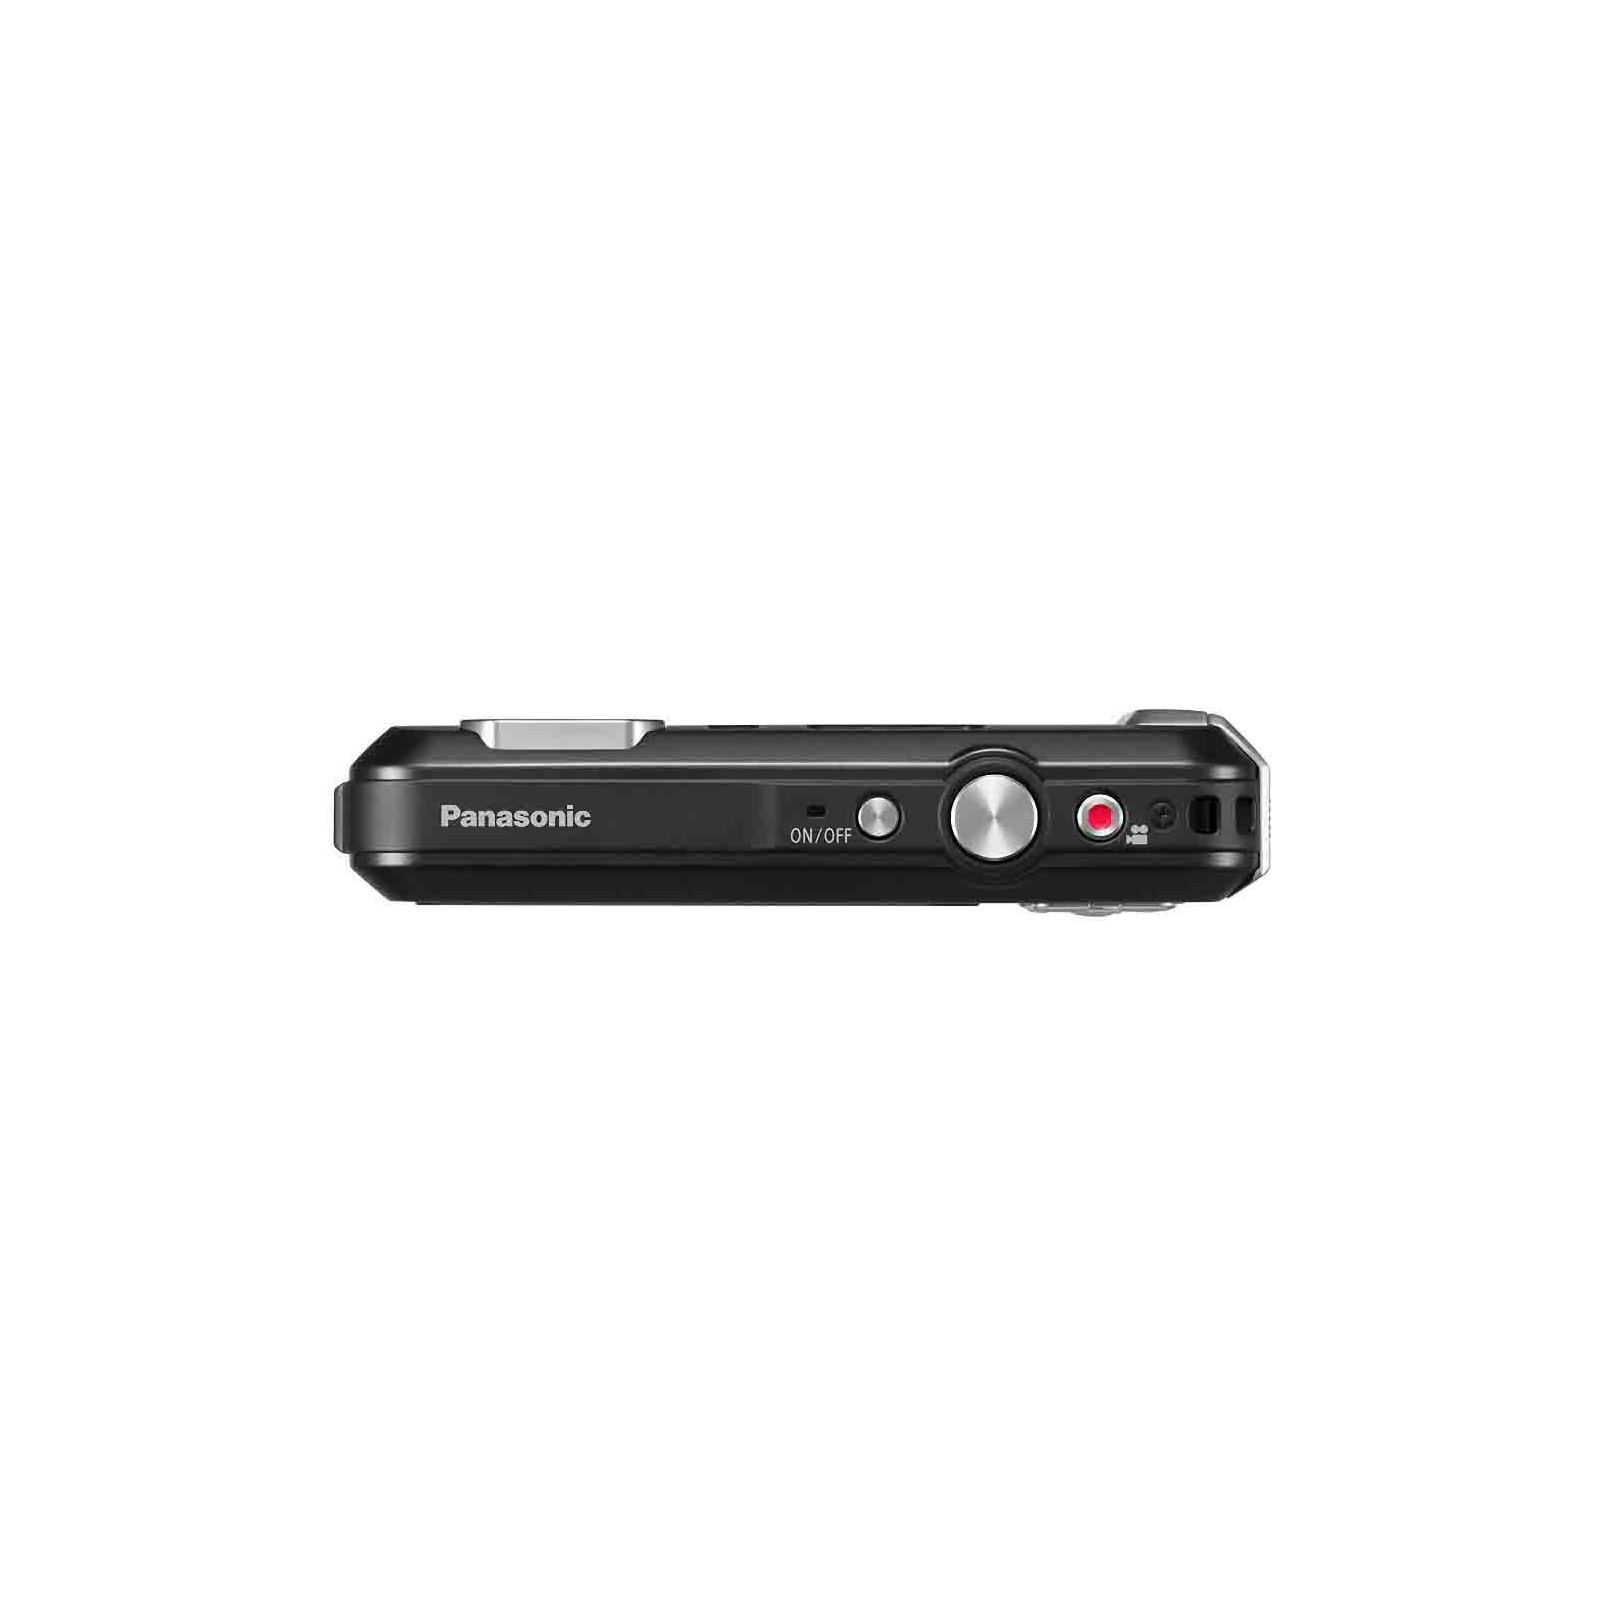 Цифровой фотоаппарат Panasonic DMC-FT30EE-K Black (DMC-FT30EE-K) изображение 5